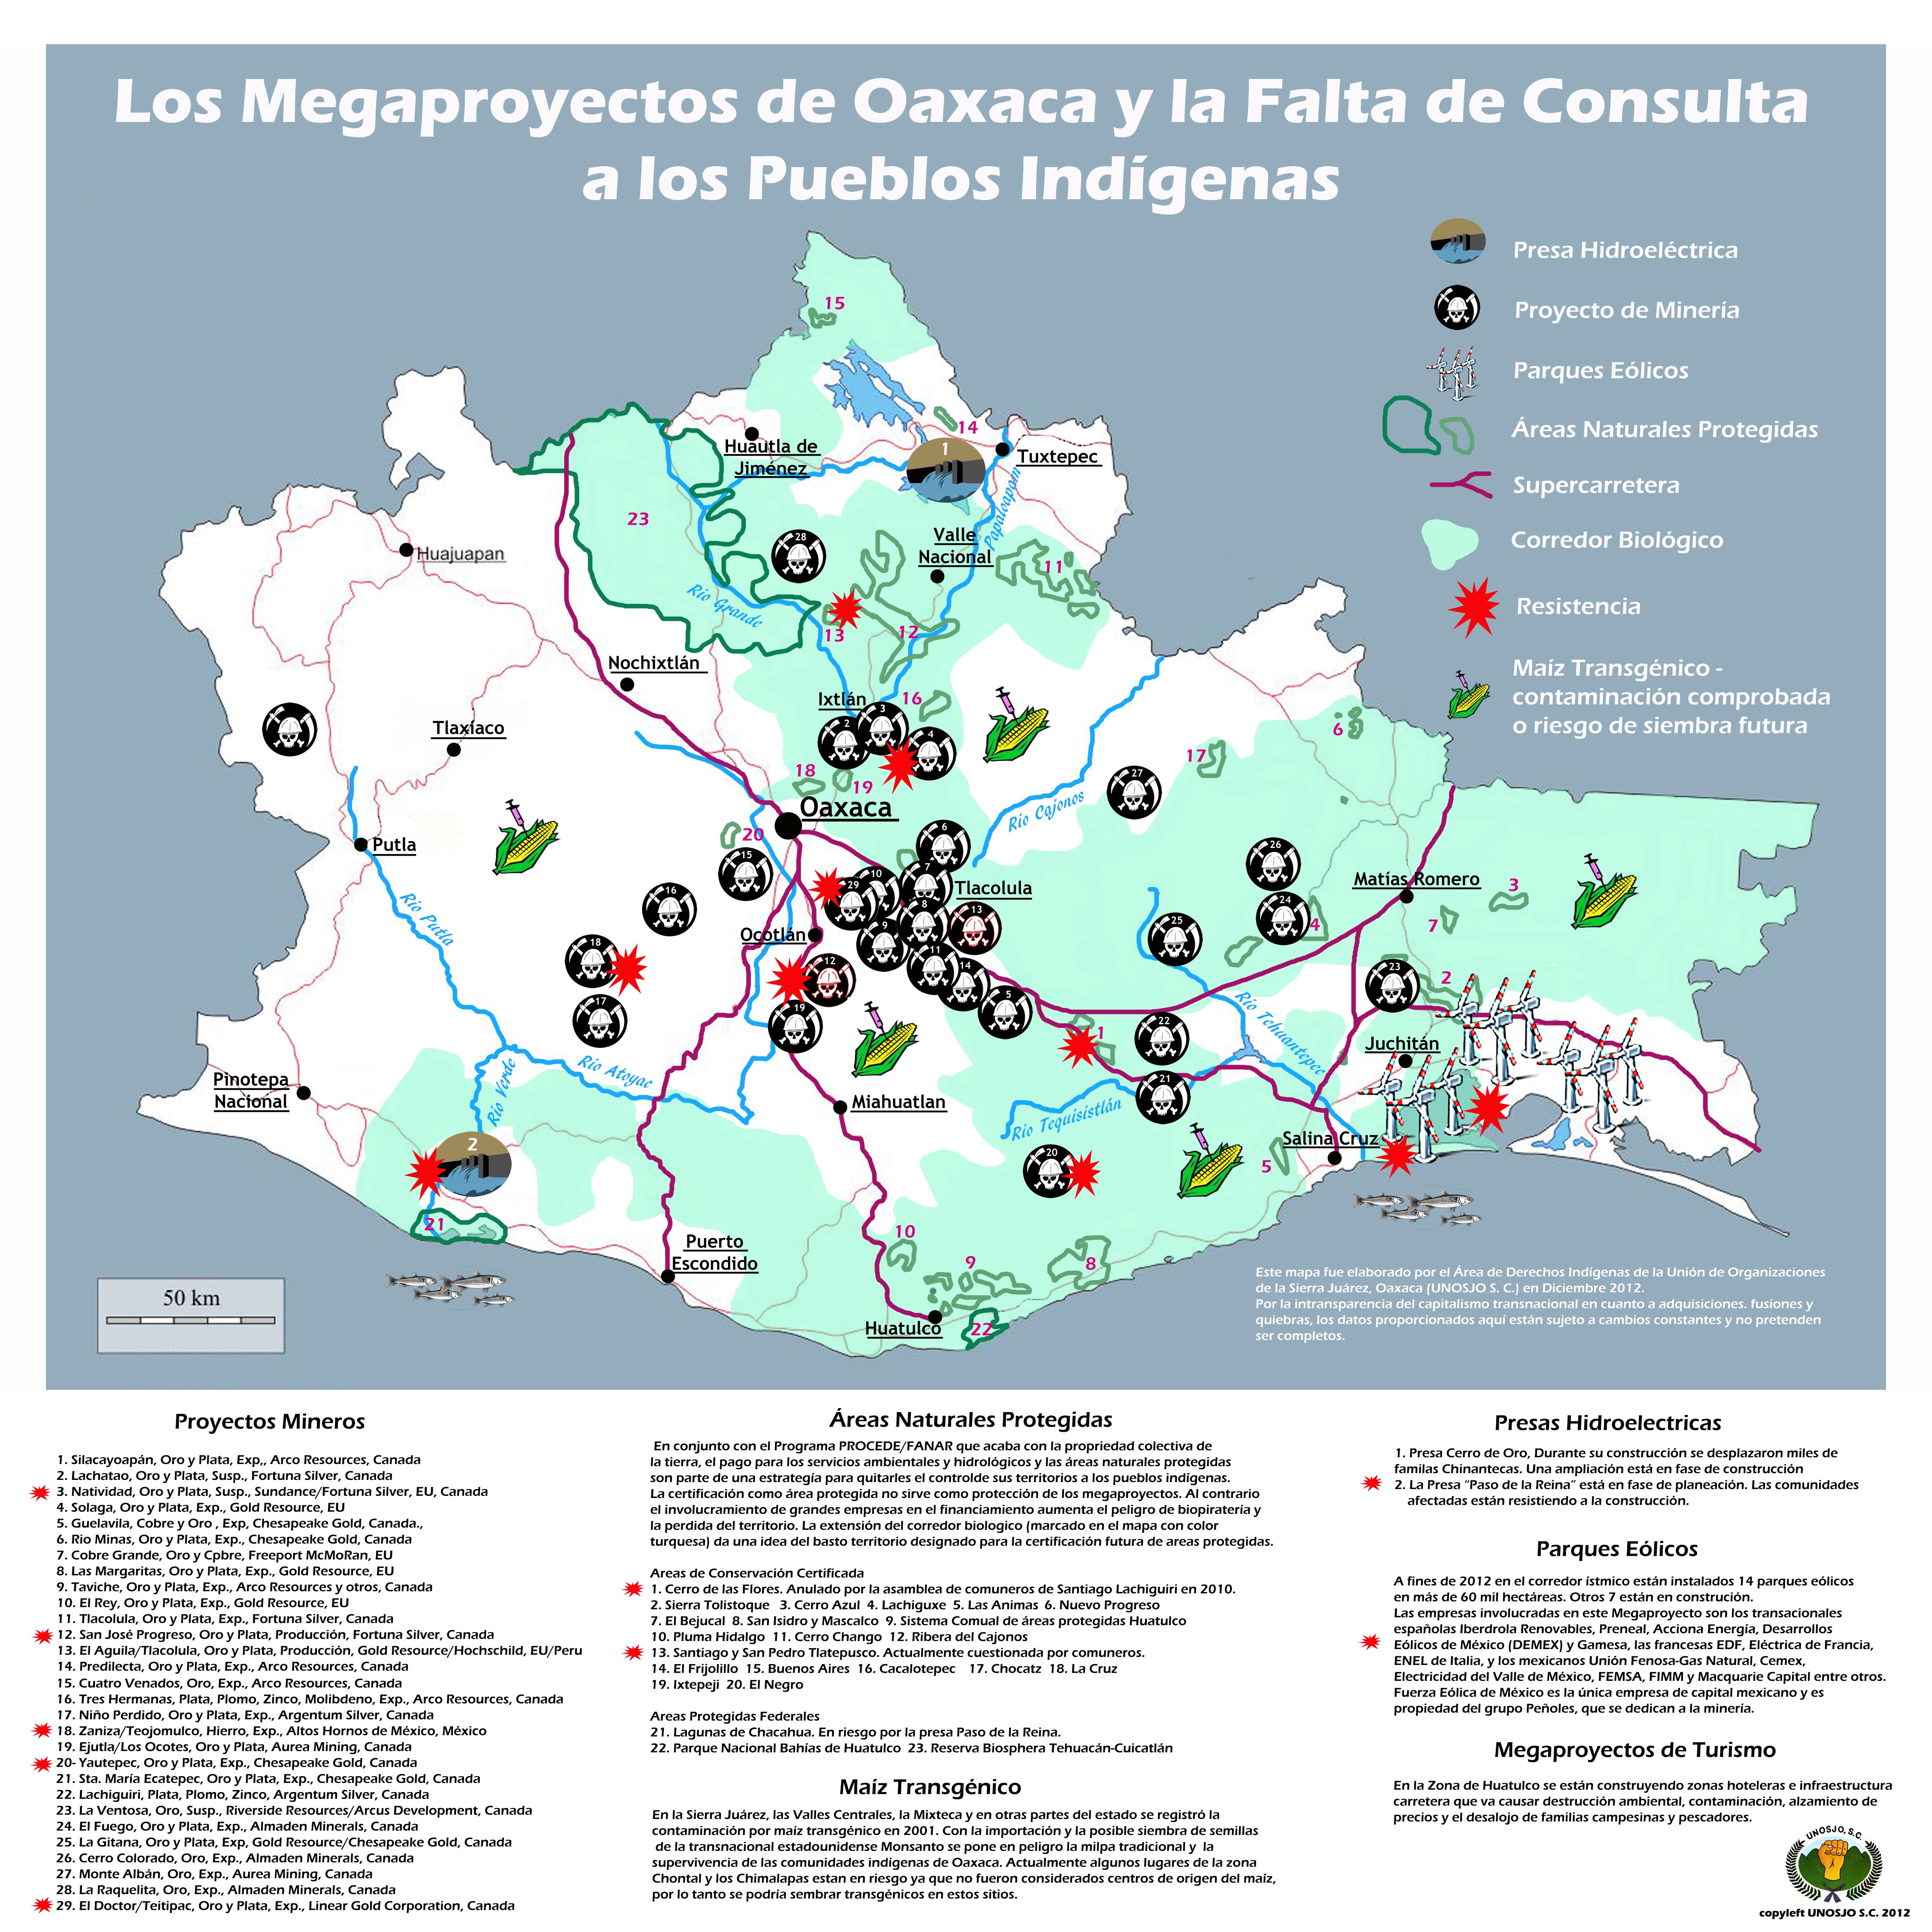 http://endefensadelosterritorios.org/endefensadelosterritorios/2013/03/Megaproyectos-de-Oaxaca12-1.jpg